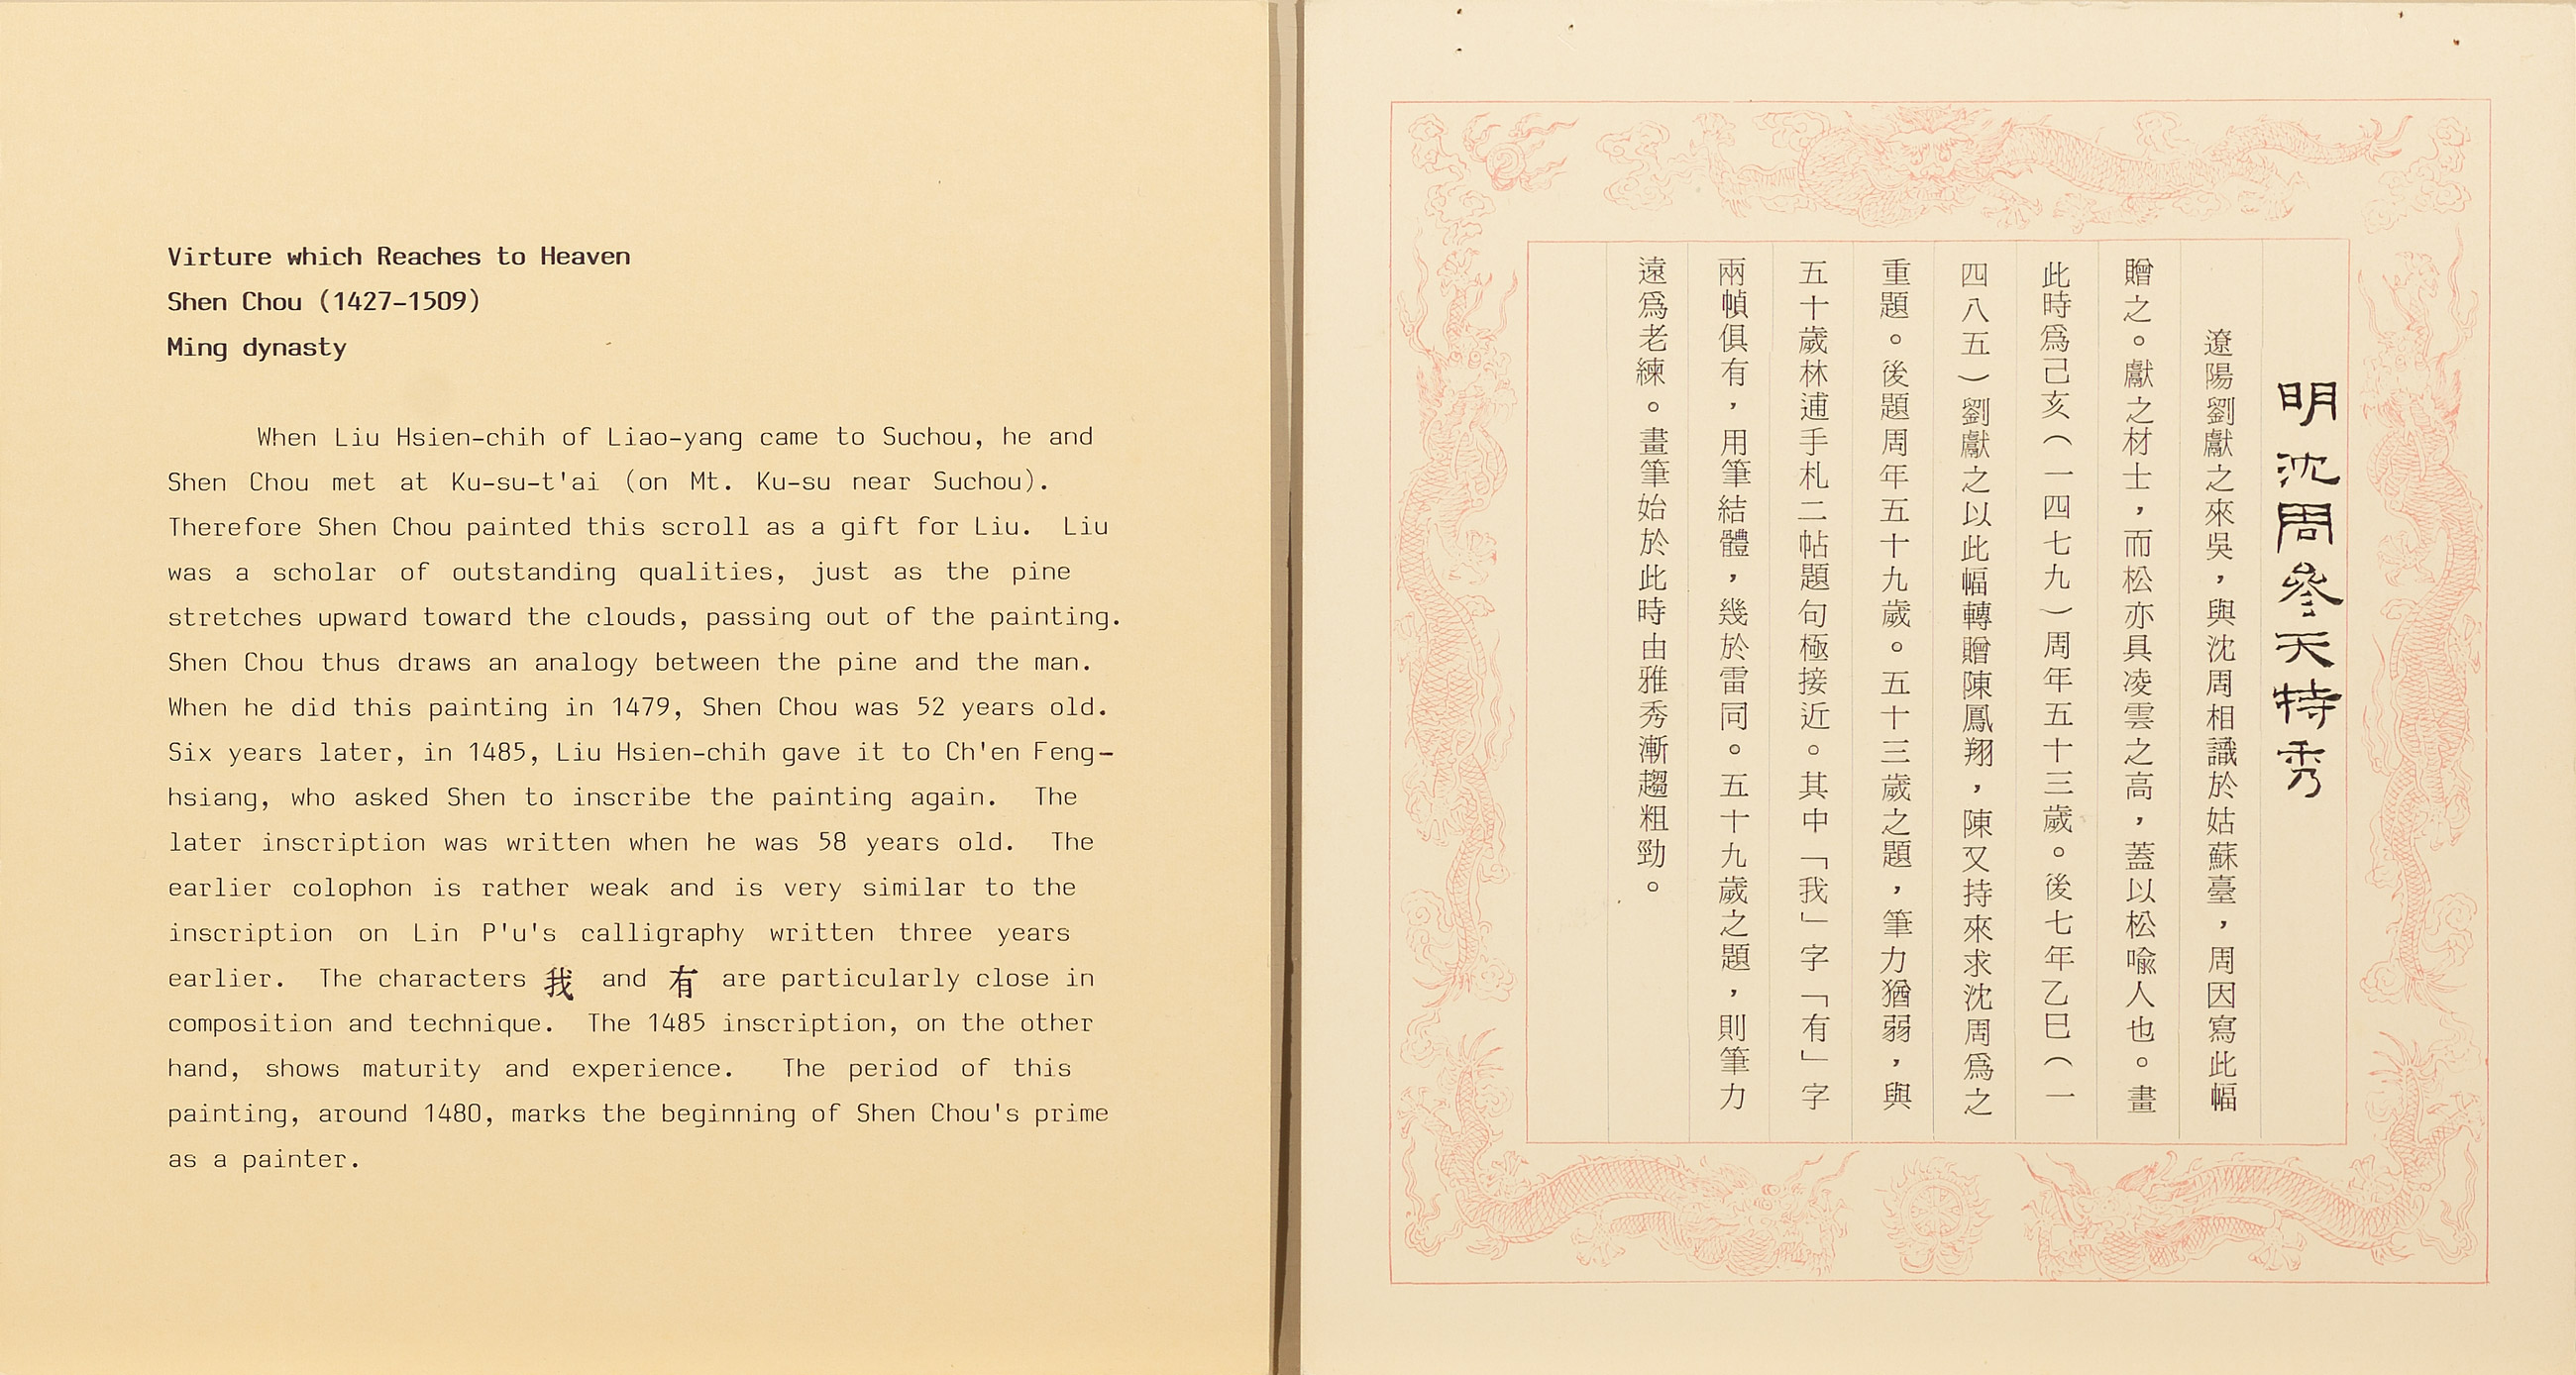 民國七十年代已開始使用的龍紋邊框說明卡式樣。江兆申先生、吳平先生、許郭璜先生均曾為此種卡片墨書題名。